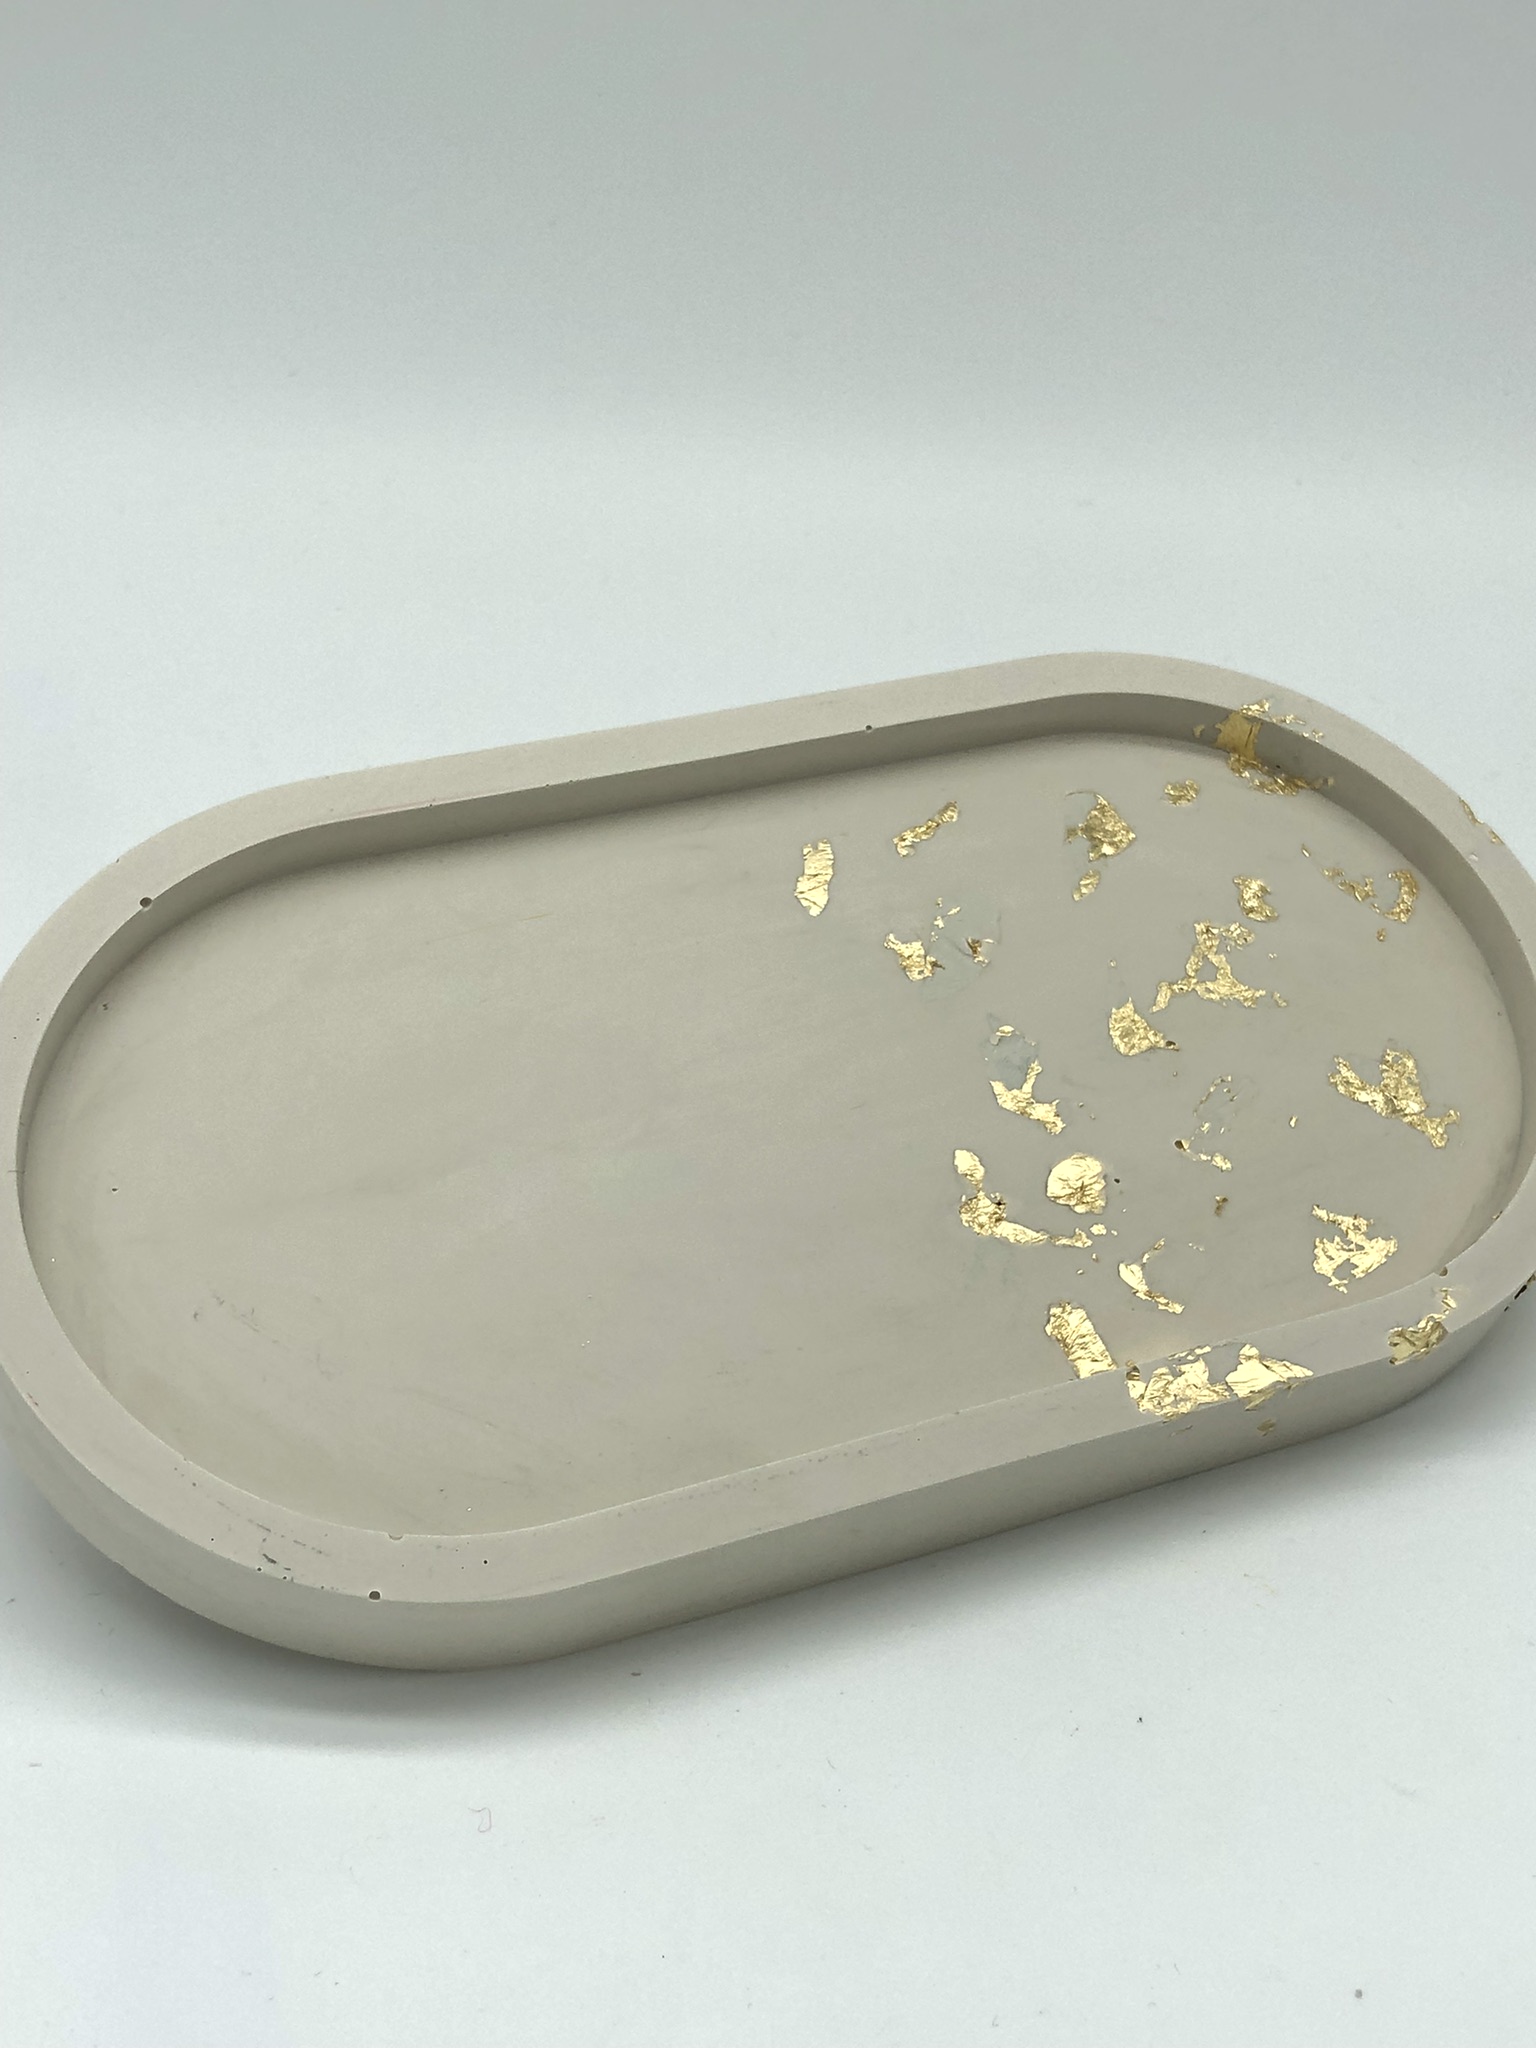 Billede af 'Sandstone' - Oval Trinket Tray skål